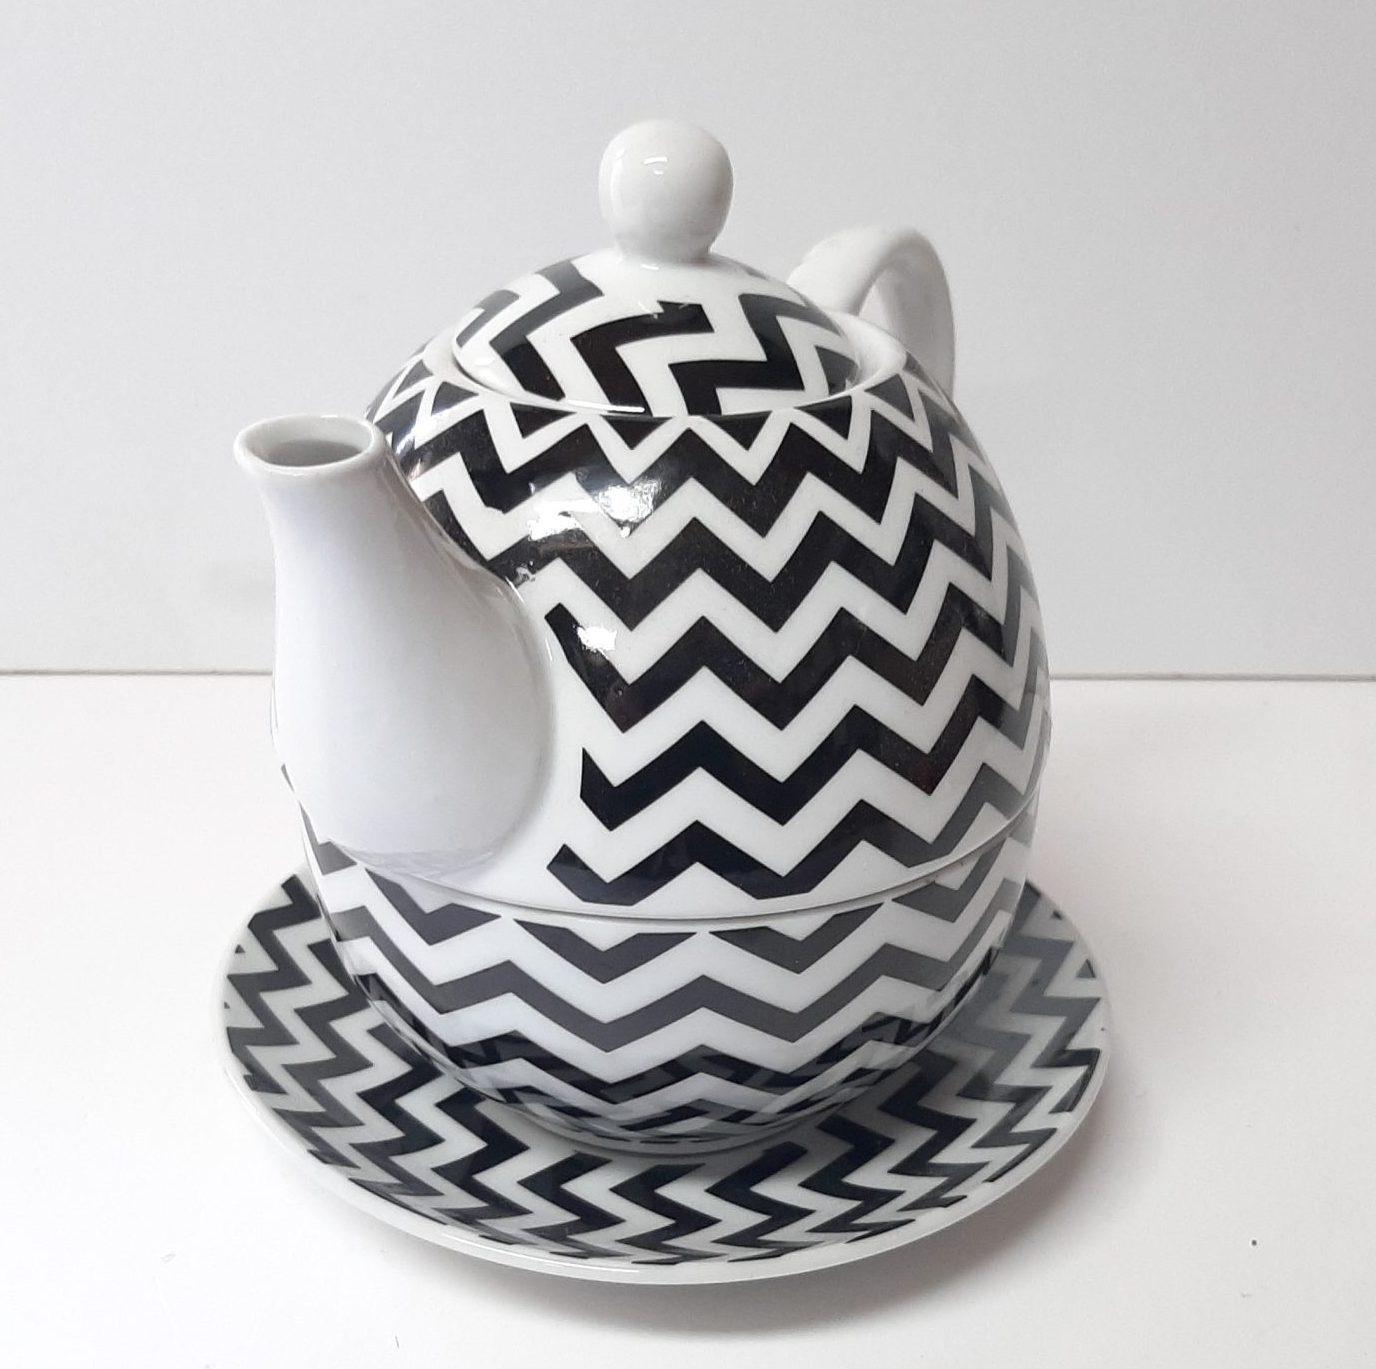 De lucht Met name Leninisme Mooie theepot set, tea for one, gemaakt van keramiek, wit met zwarte  hoekige retro print